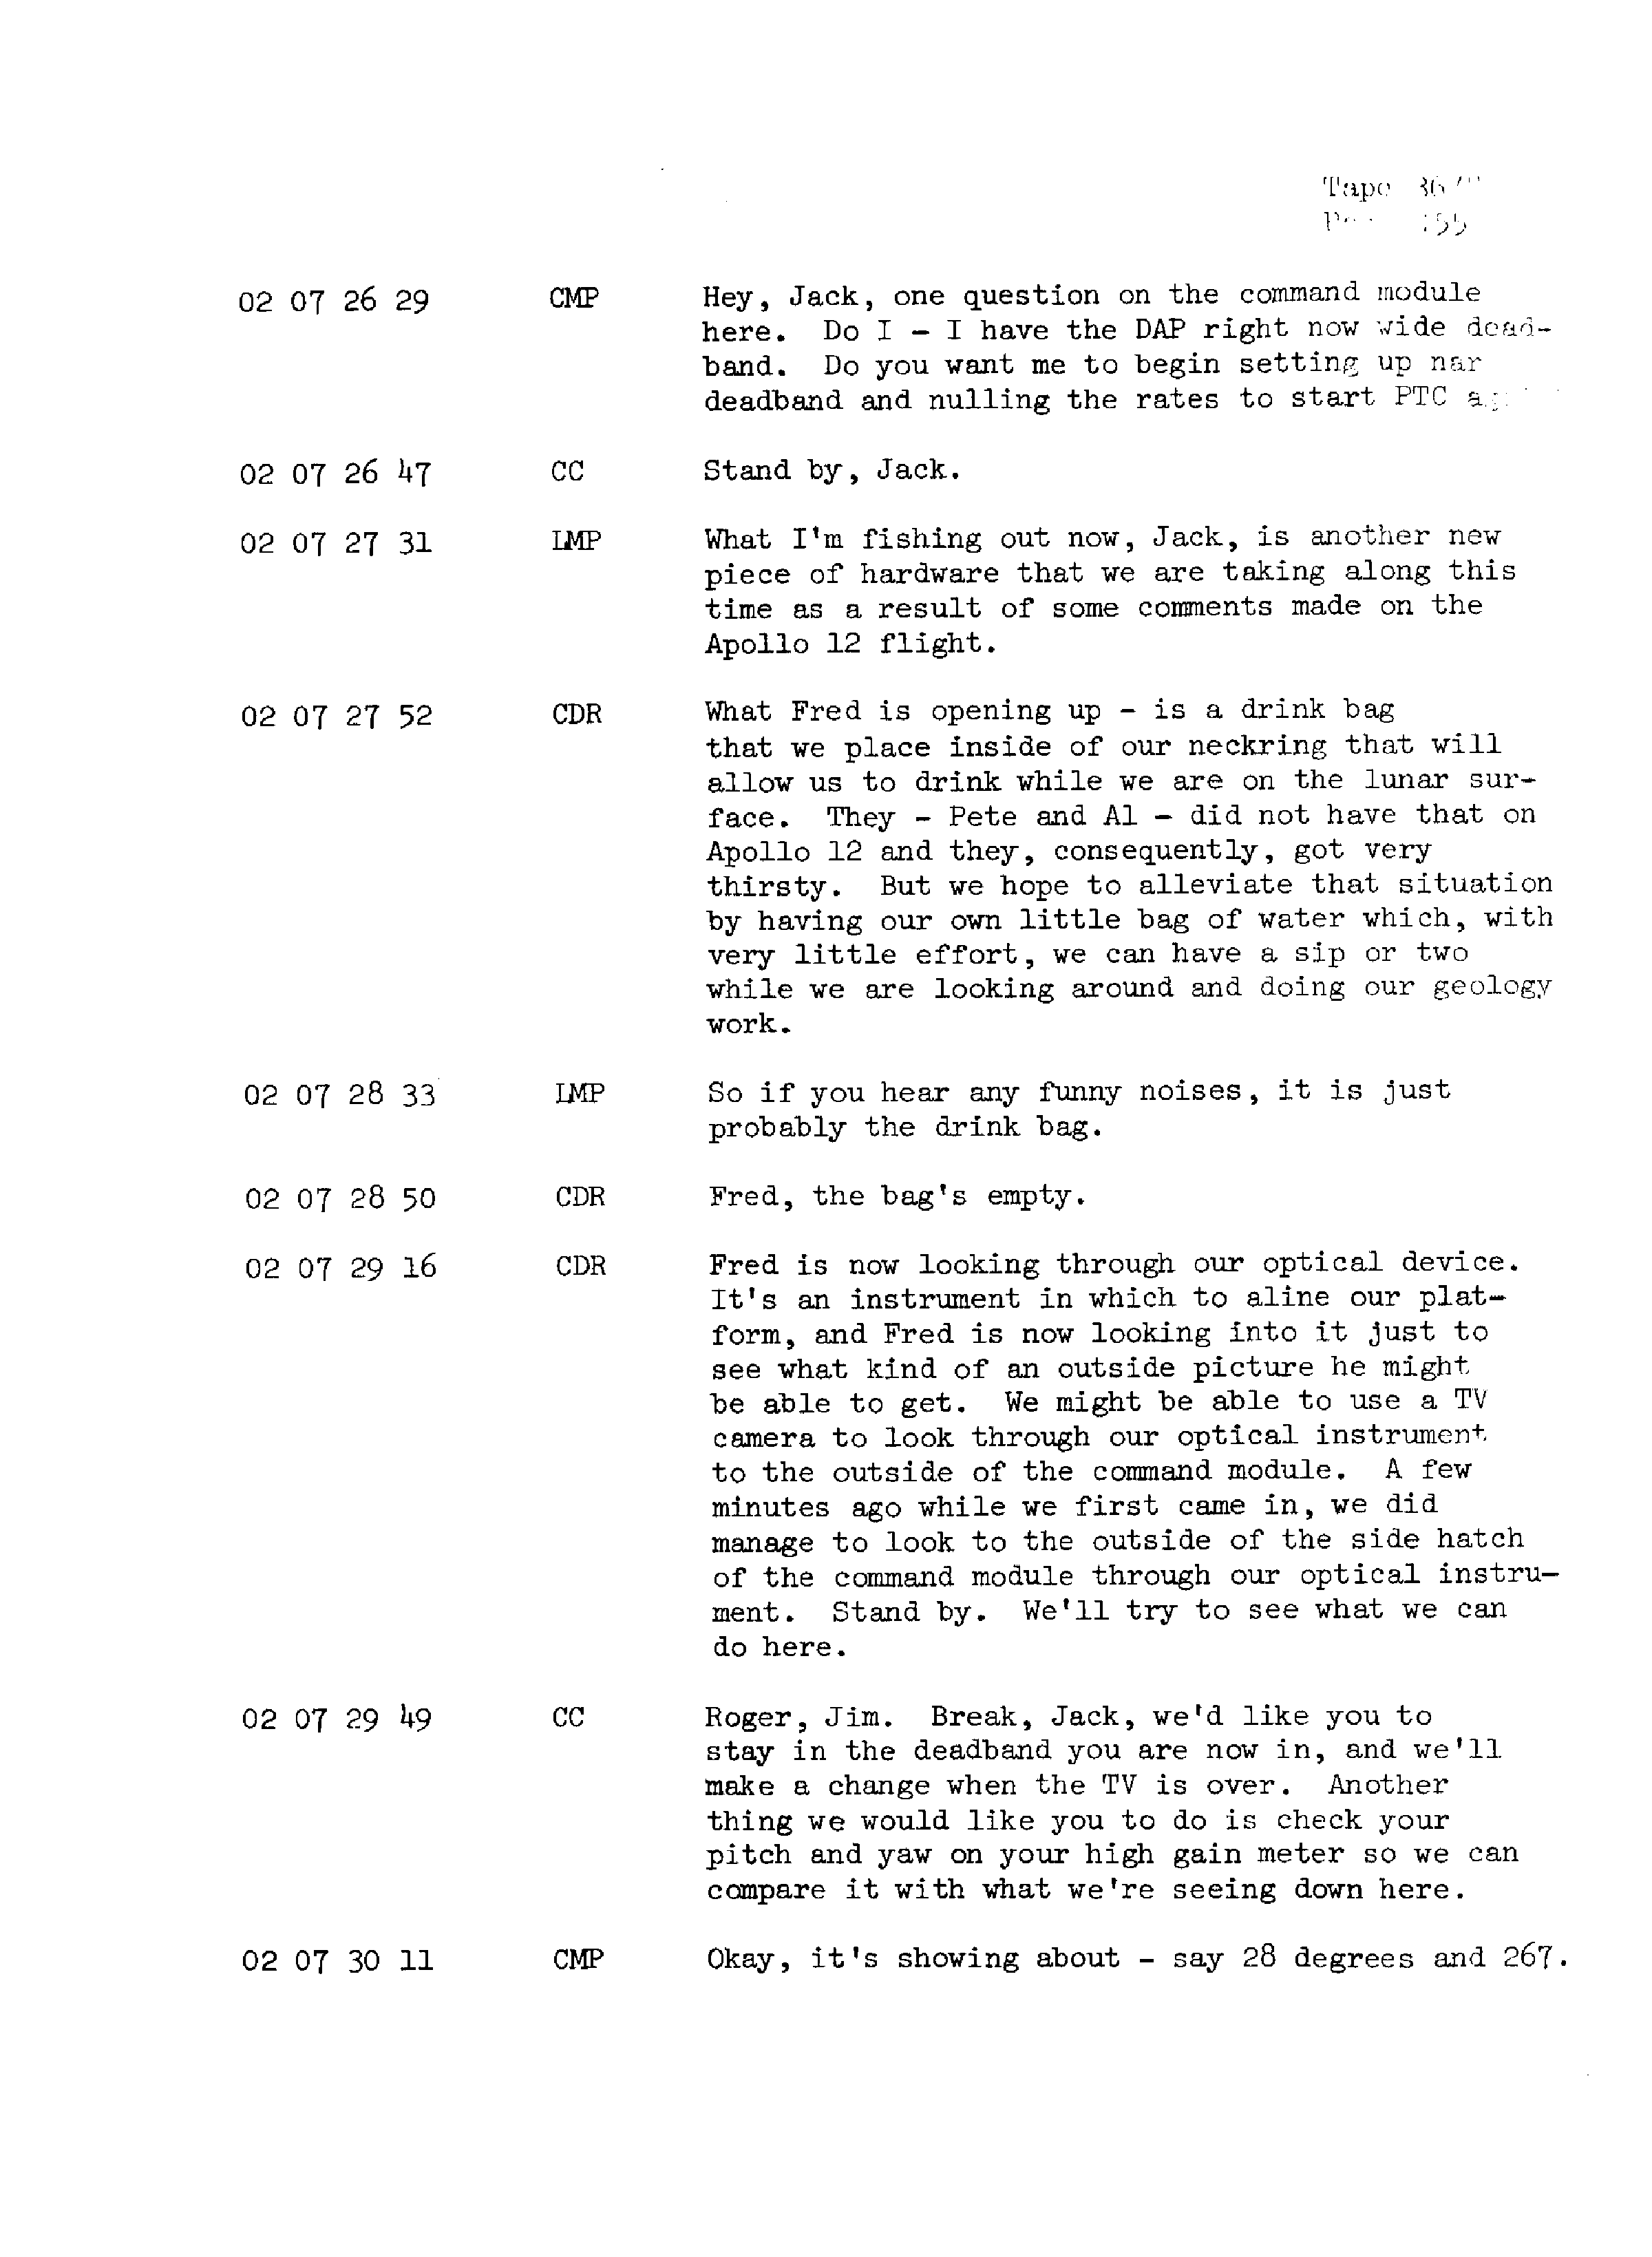 Page 162 of Apollo 13’s original transcript